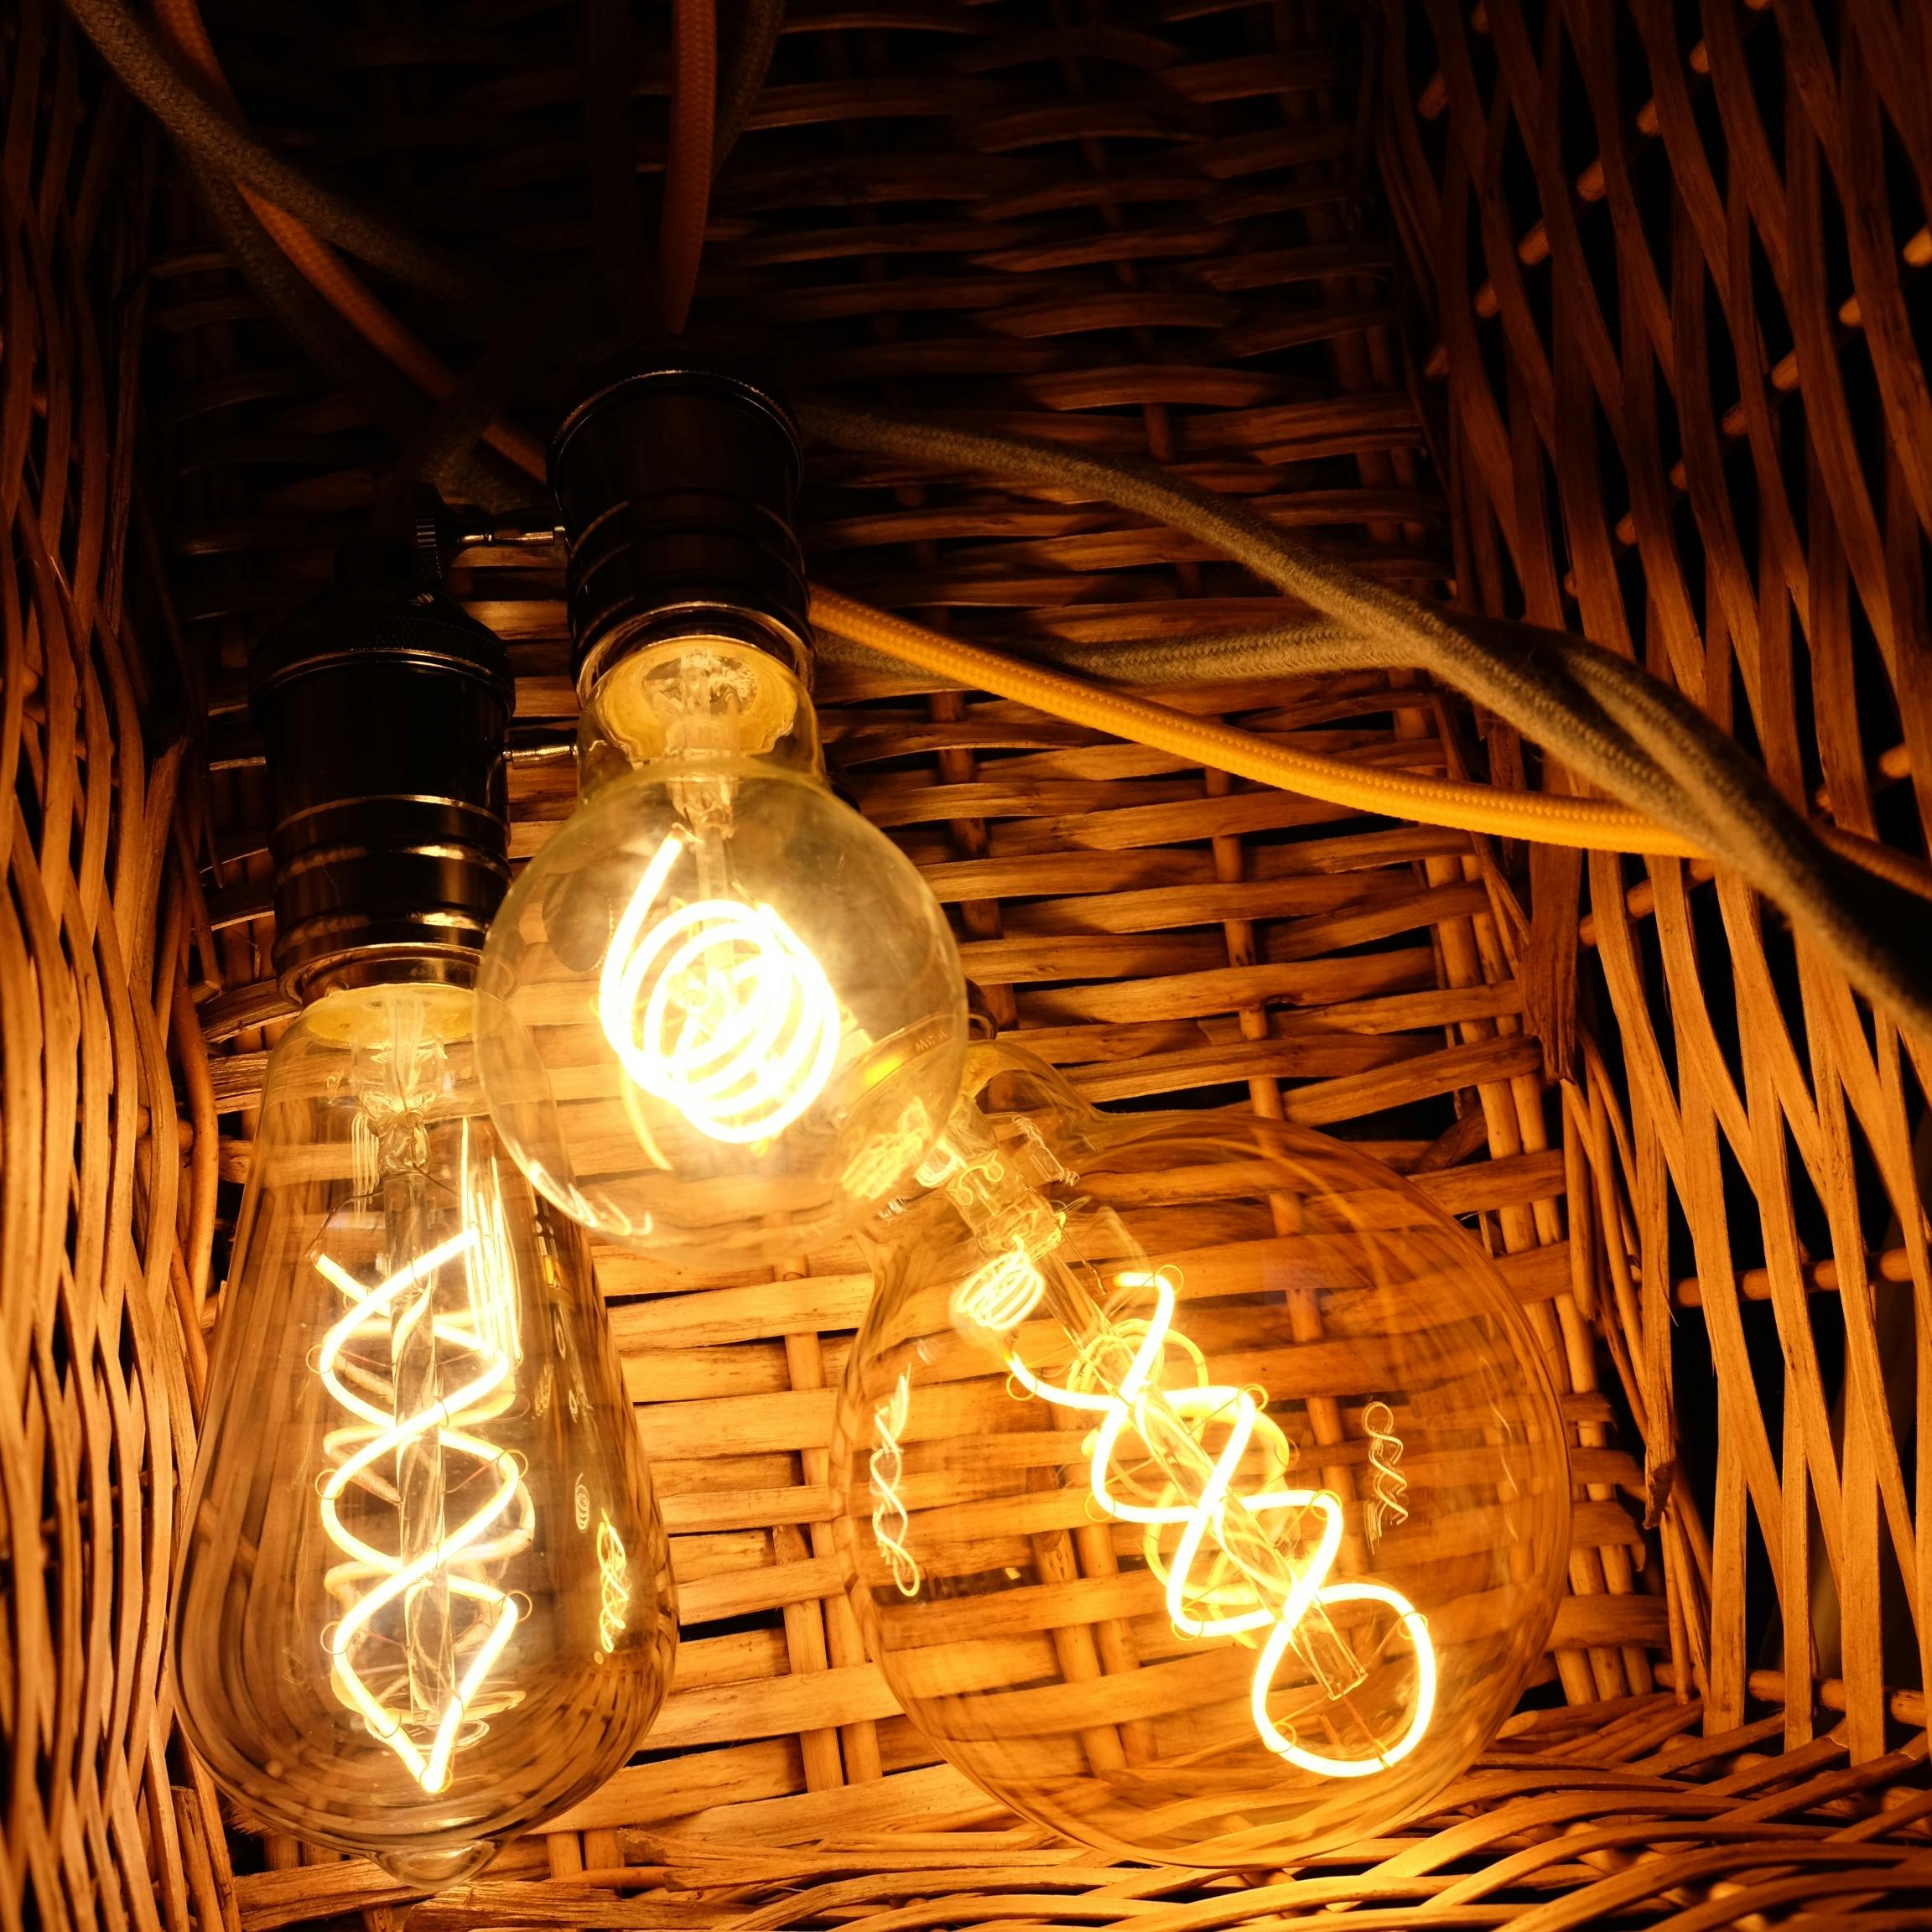 Free stock photo of Led filament light bulbs Ledsupermarket.com